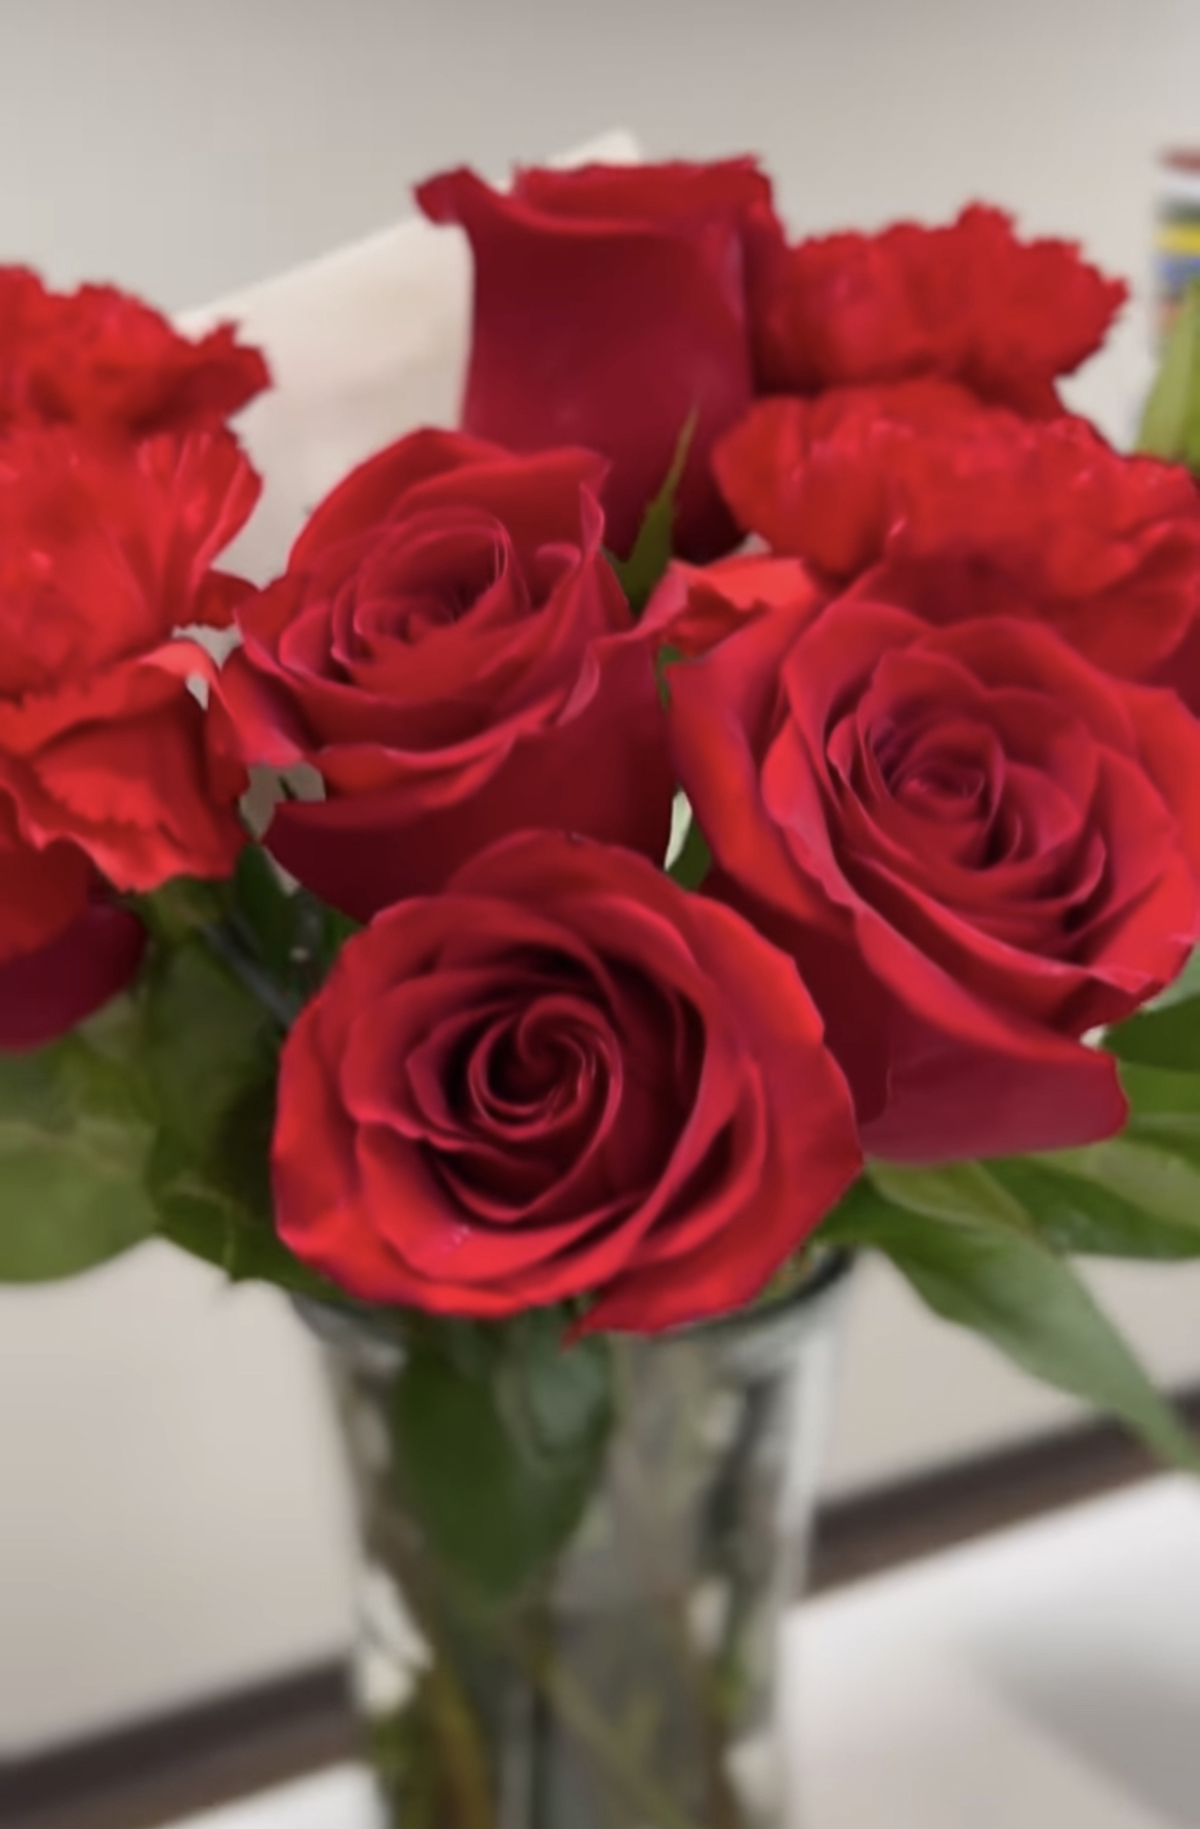 Las flores que le envió Toni Costa a Evelyn Beltrán por los 13 meses juntos